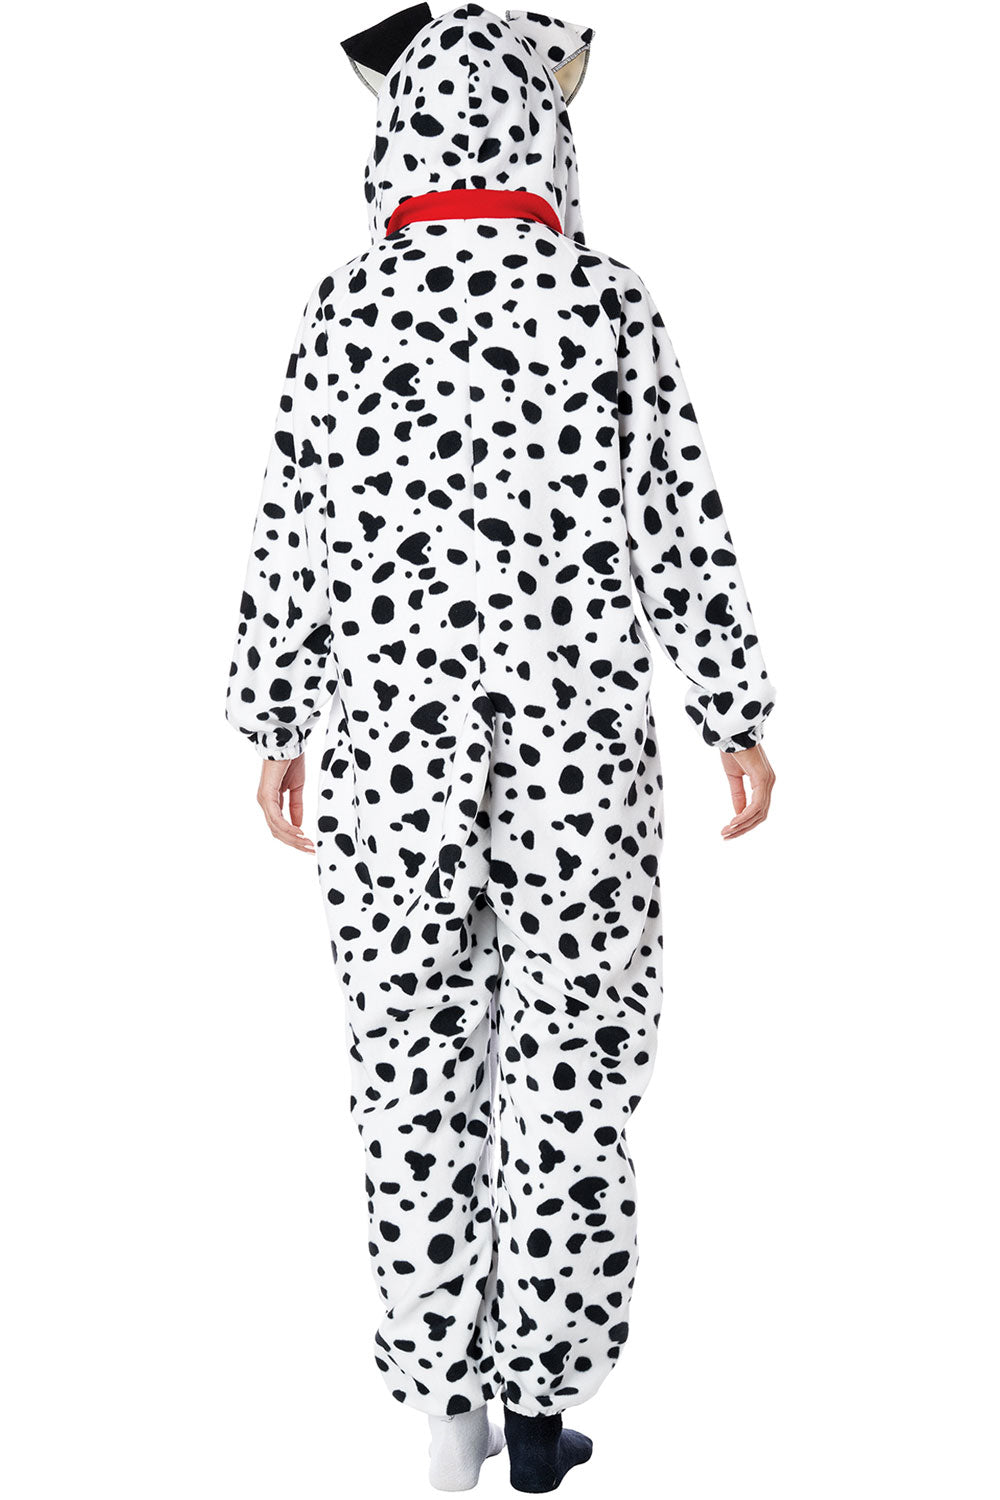 Dalmatian Onesie / Adult California Costume 5221-173